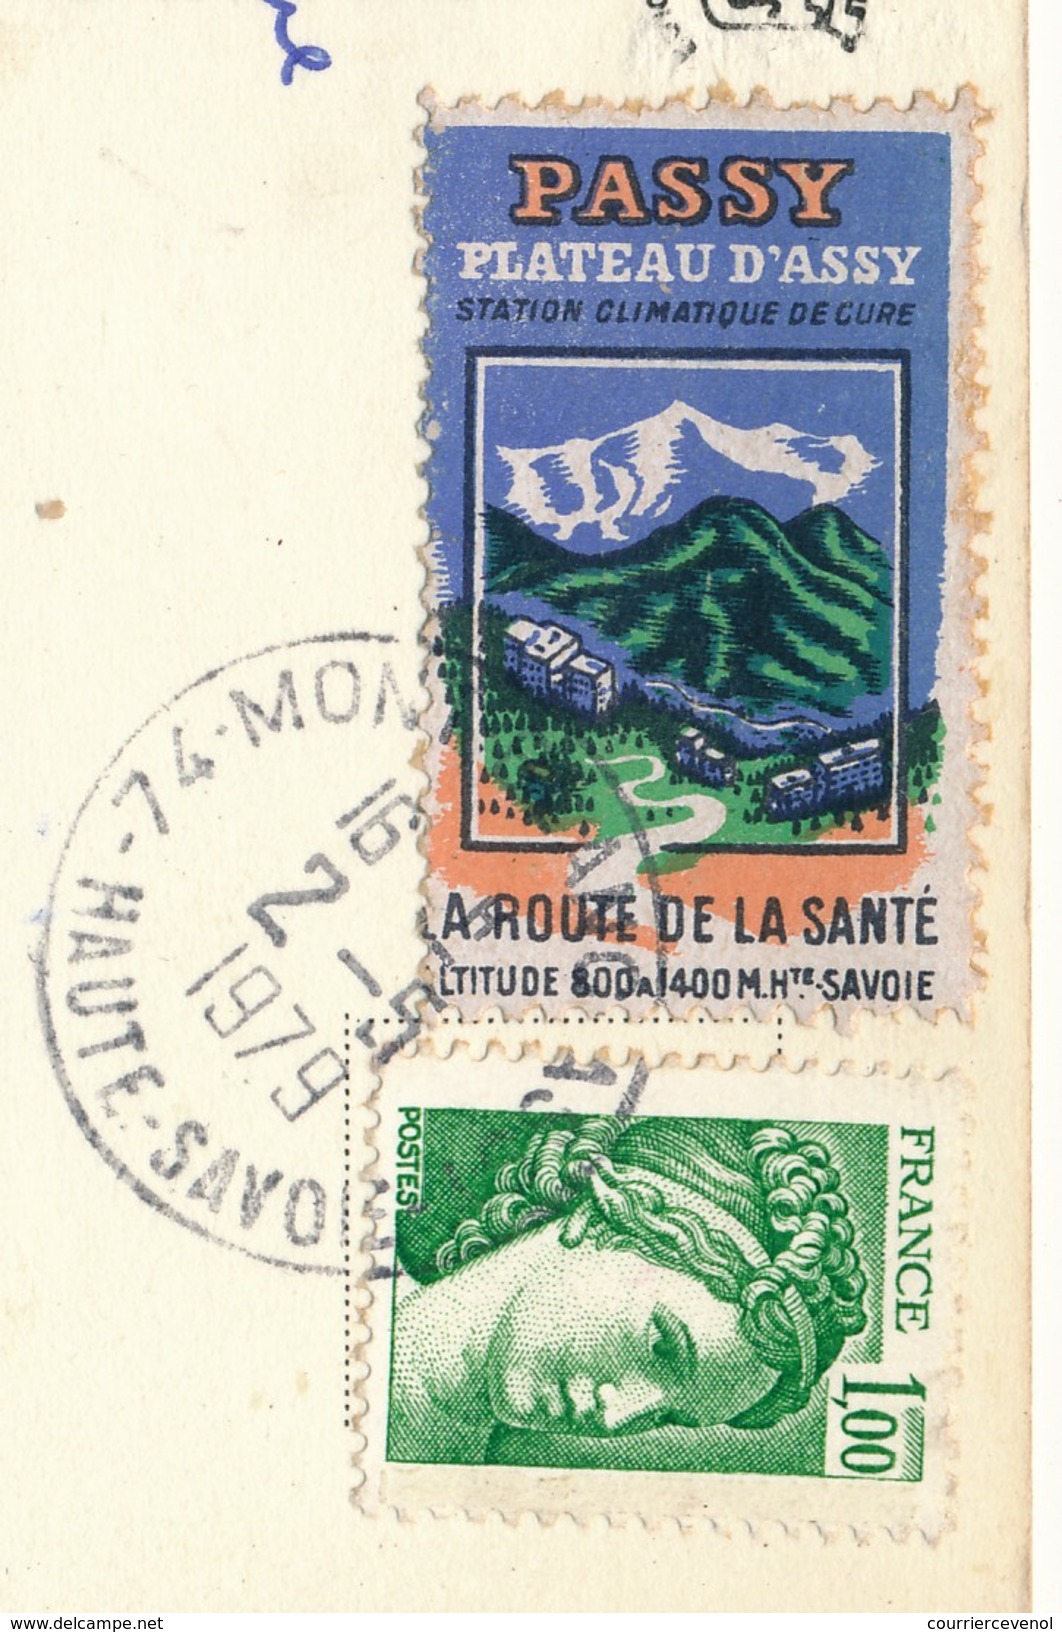 FRANCE => Vignette "Passy, Plateau D'Assy - La Route De La Santé" Sur Carte Postale 1979 - Brieven En Documenten